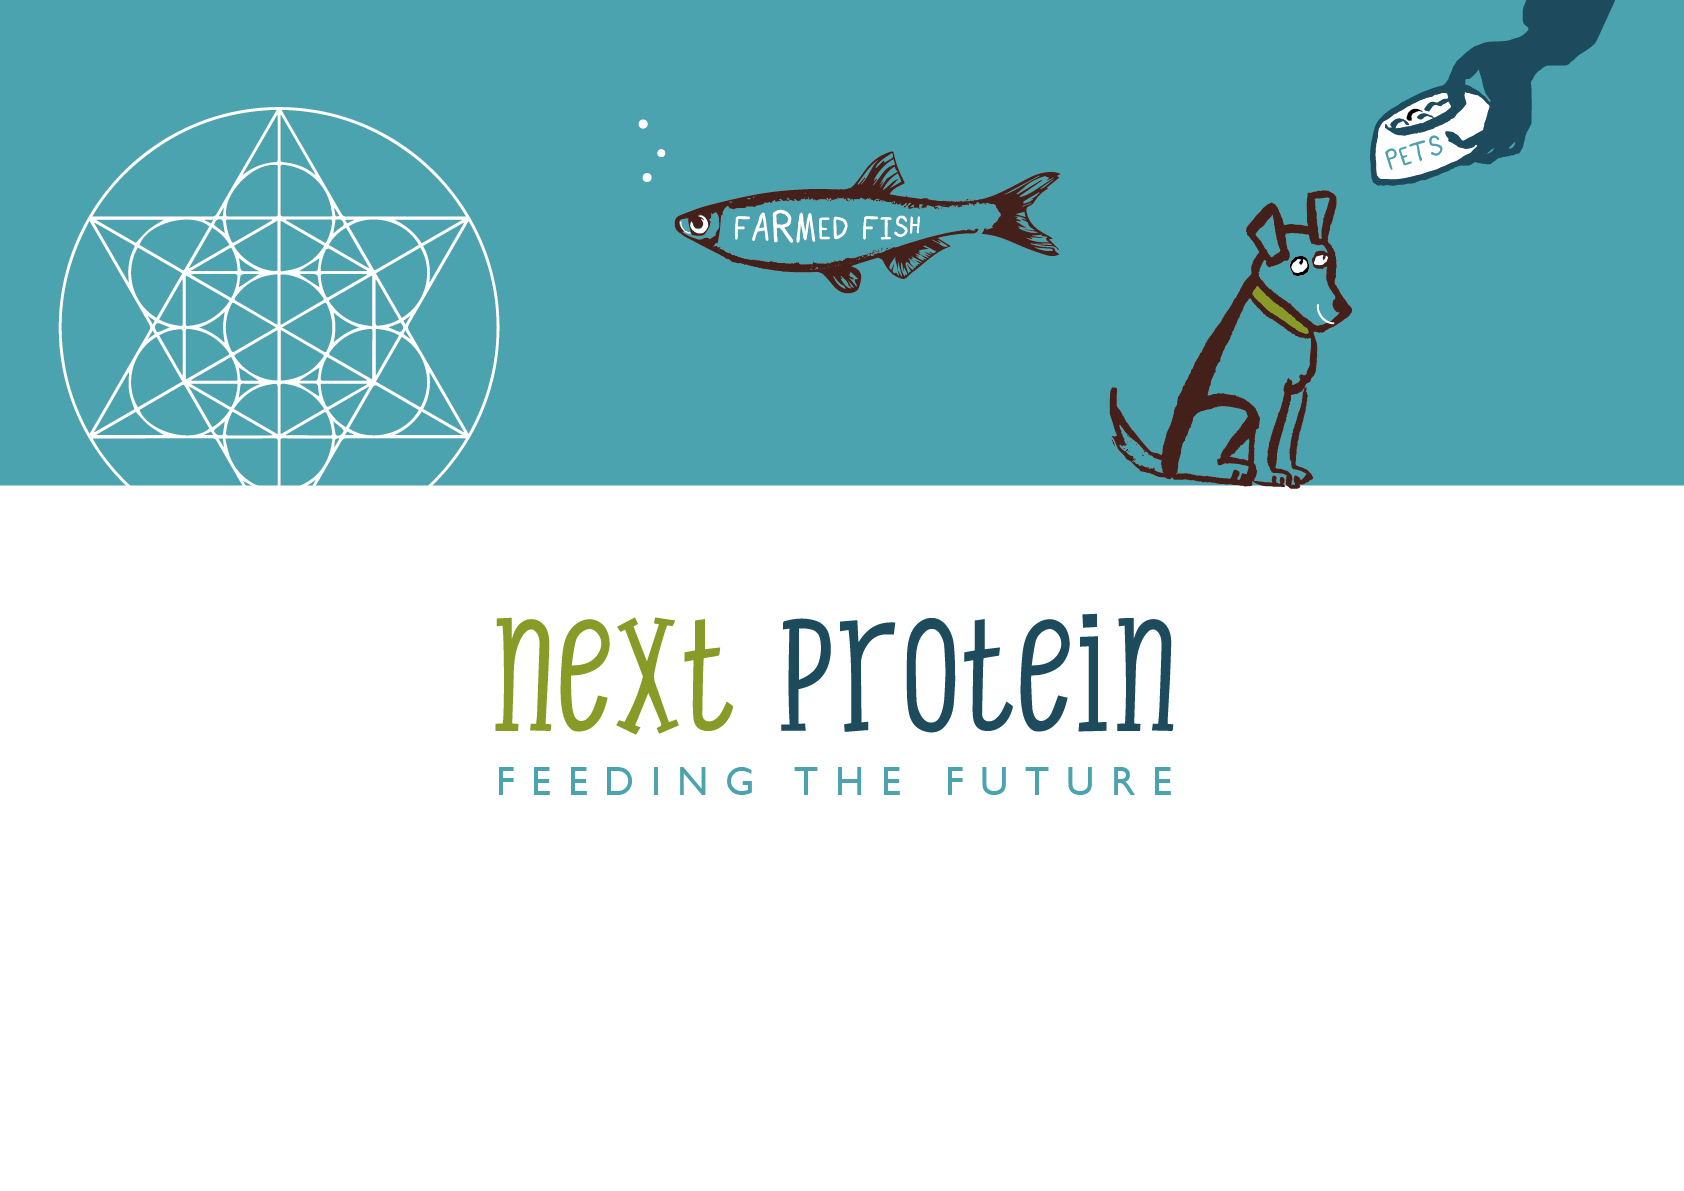 NextProtein_concept1-02.jpg